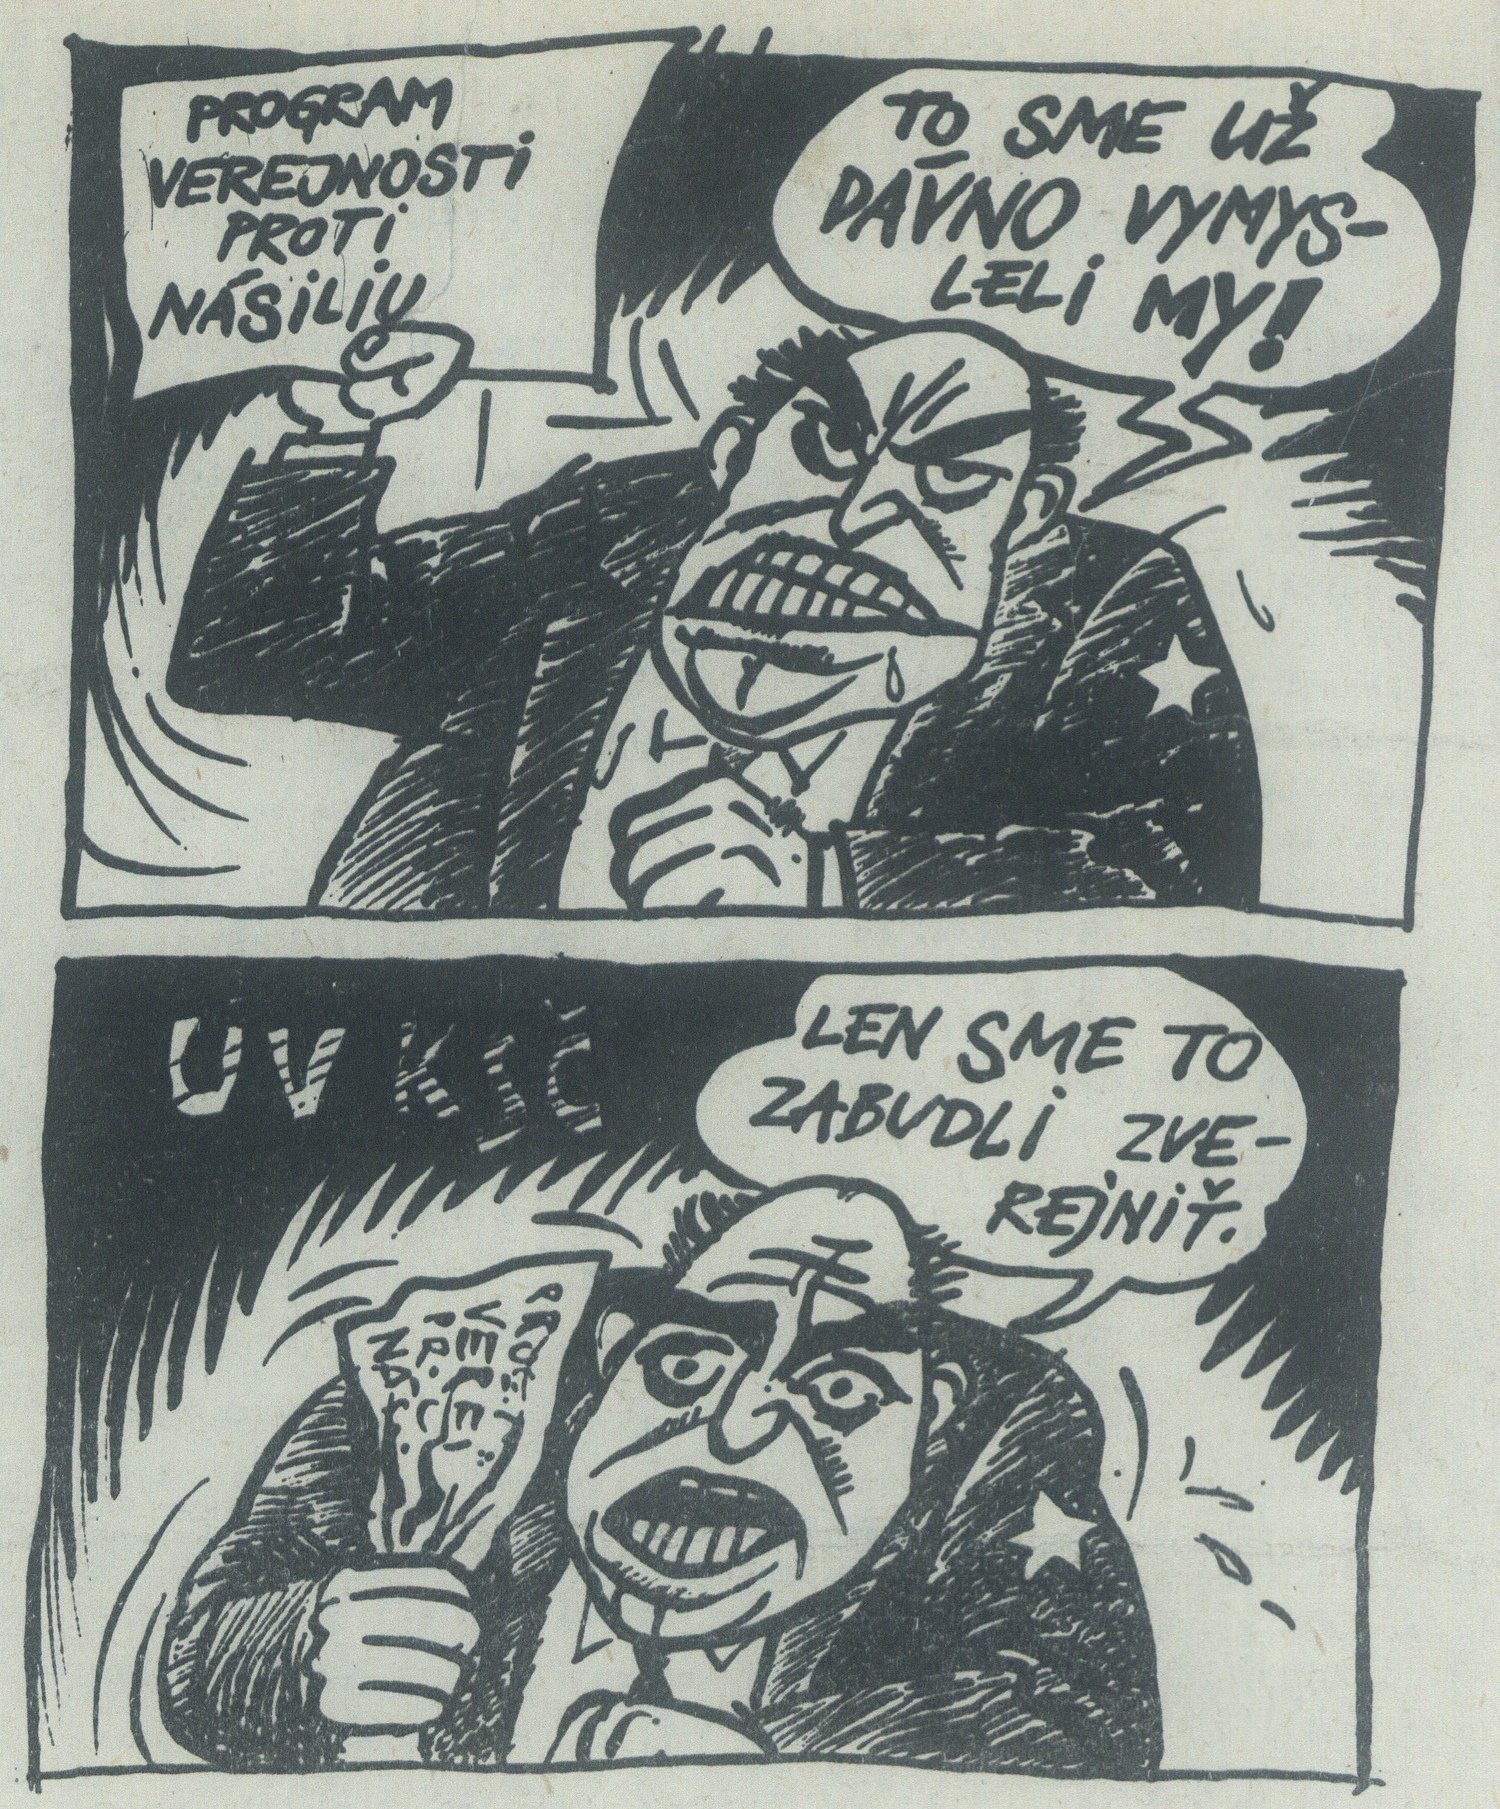 To sme už dávno vymysleli my, karikatúra v časopise Zmena. 1989. Univerzitná knižnica v Bratislave